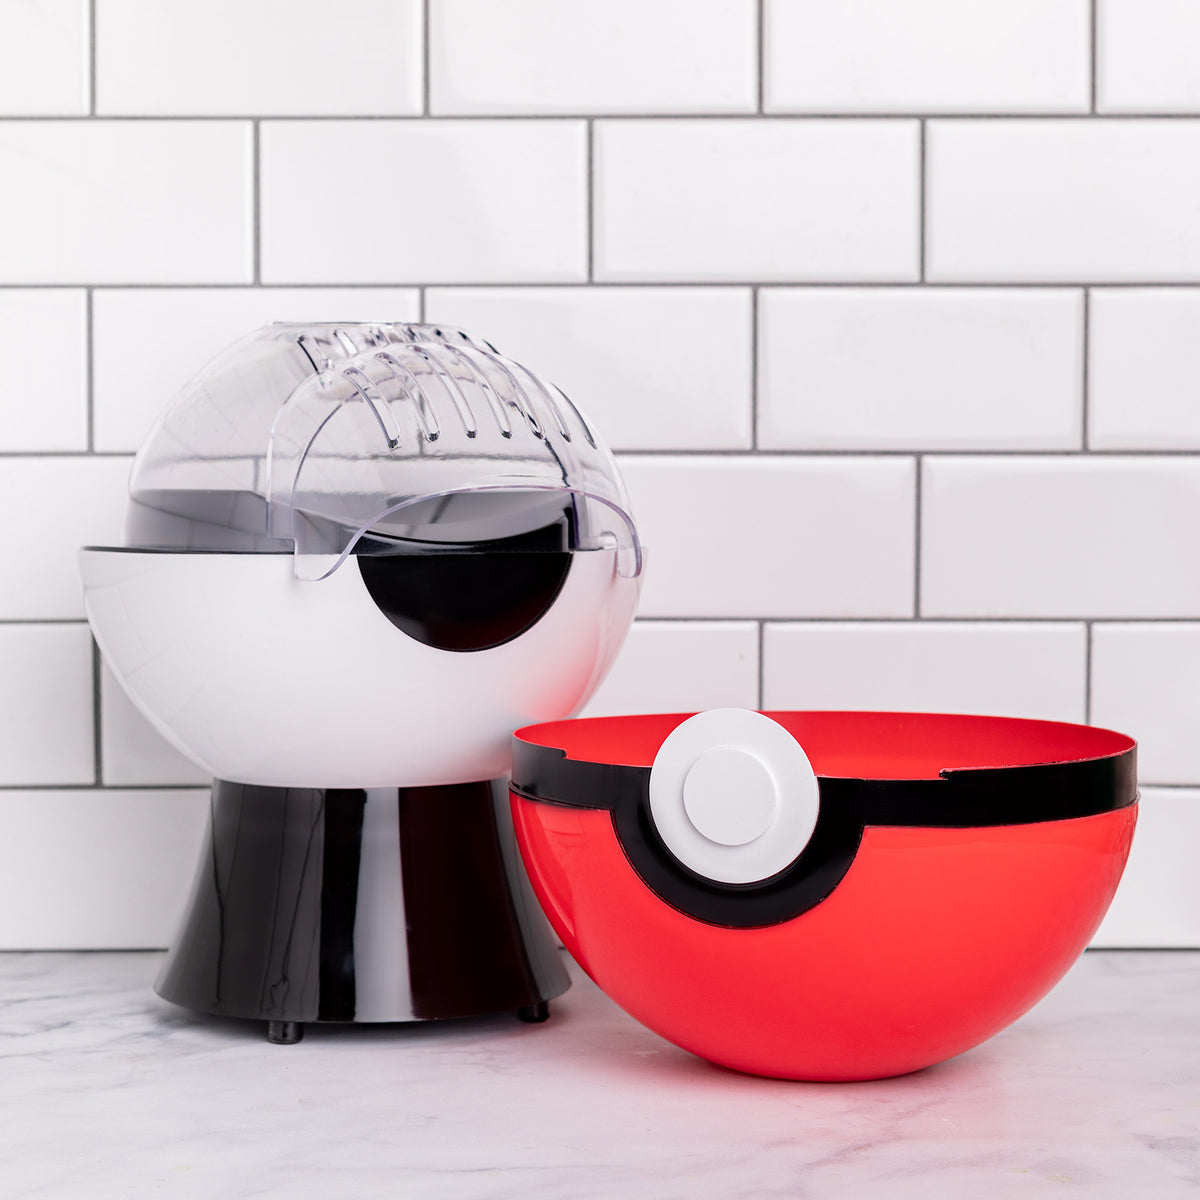 Uncanny Brands Pokémon Poké Ball Popcorn Maker- Pokémon Kitchen